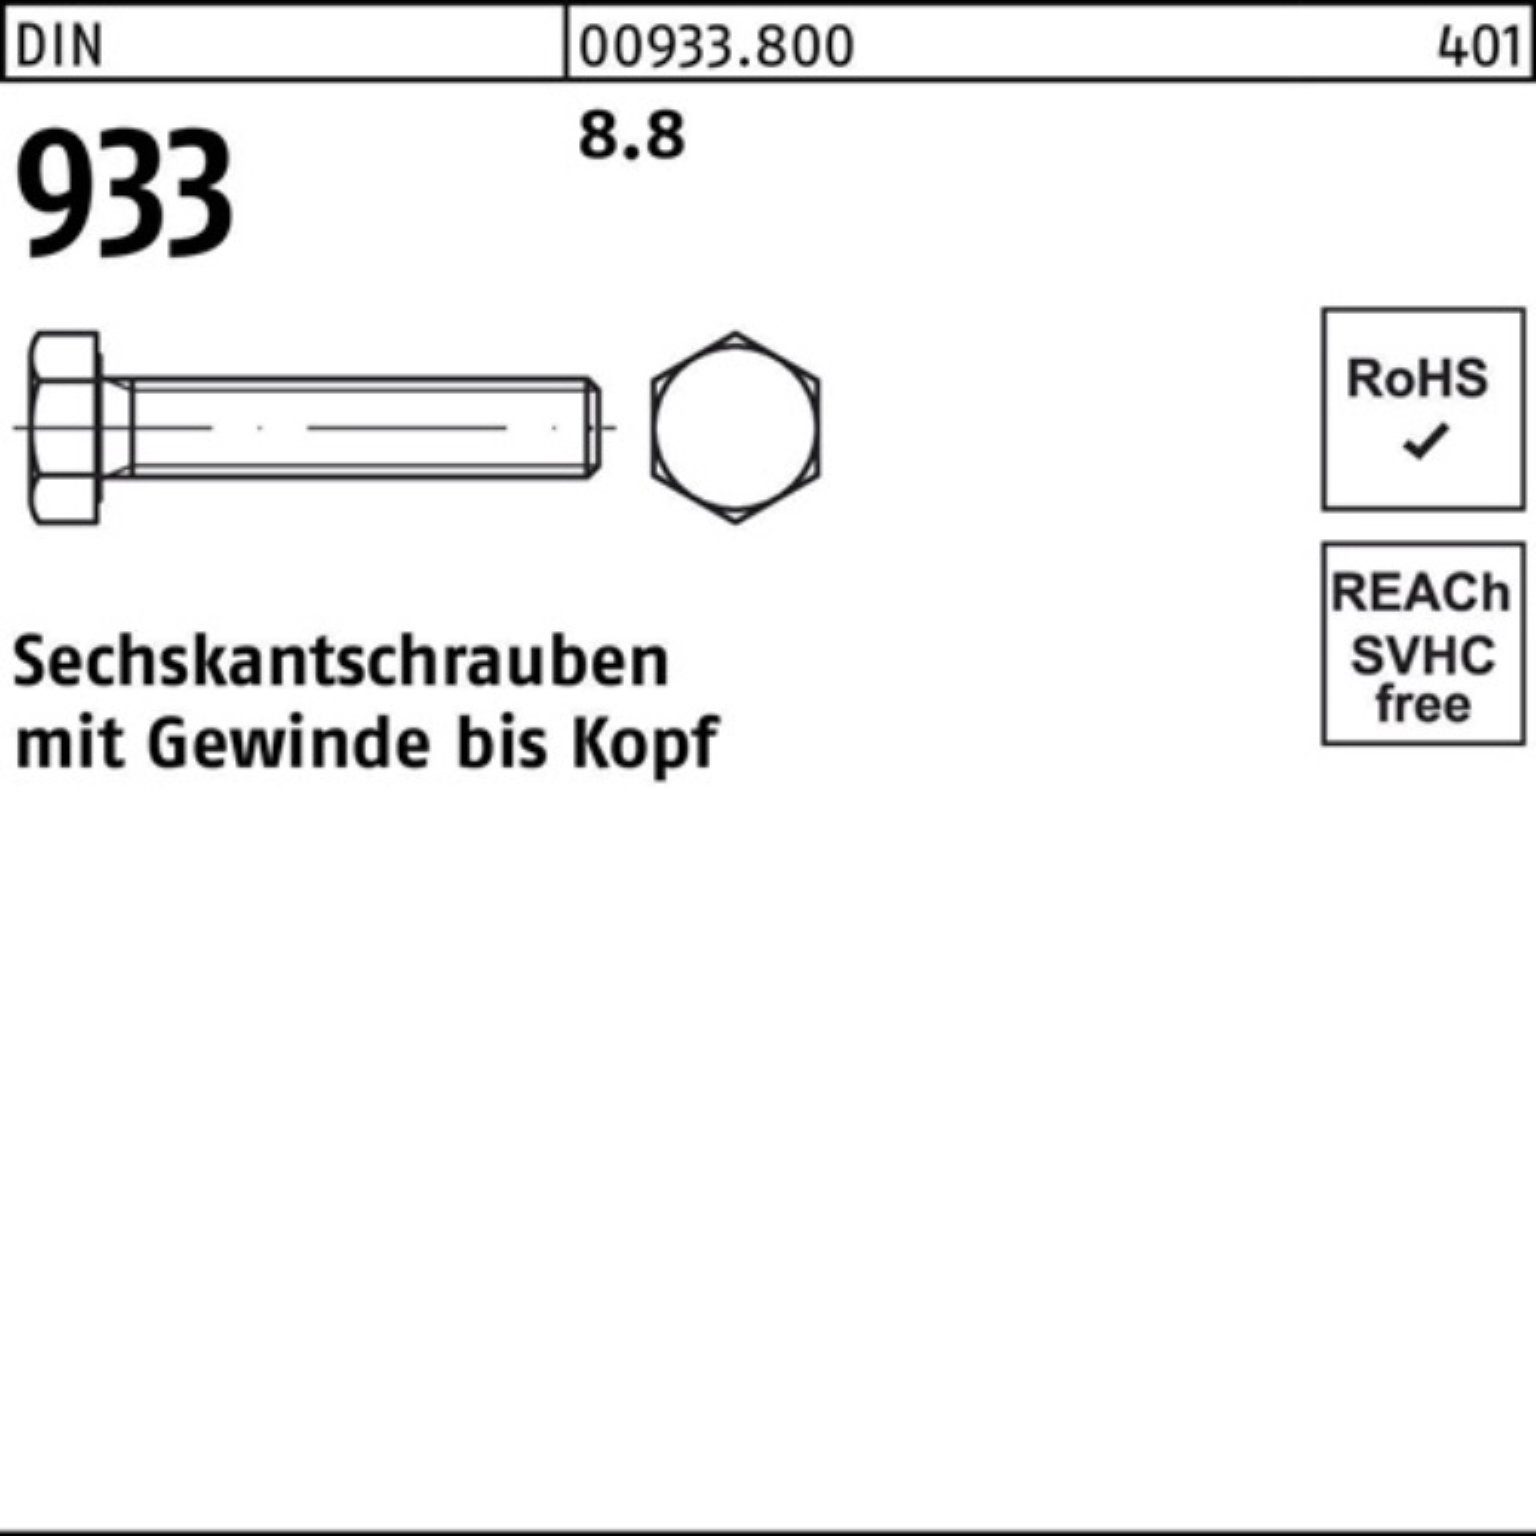 Sechskantschraube 300 Sechskantschraube 8.8 100er DIN 1 DIN Reyher 933 Stück 933 Pack VG M42x